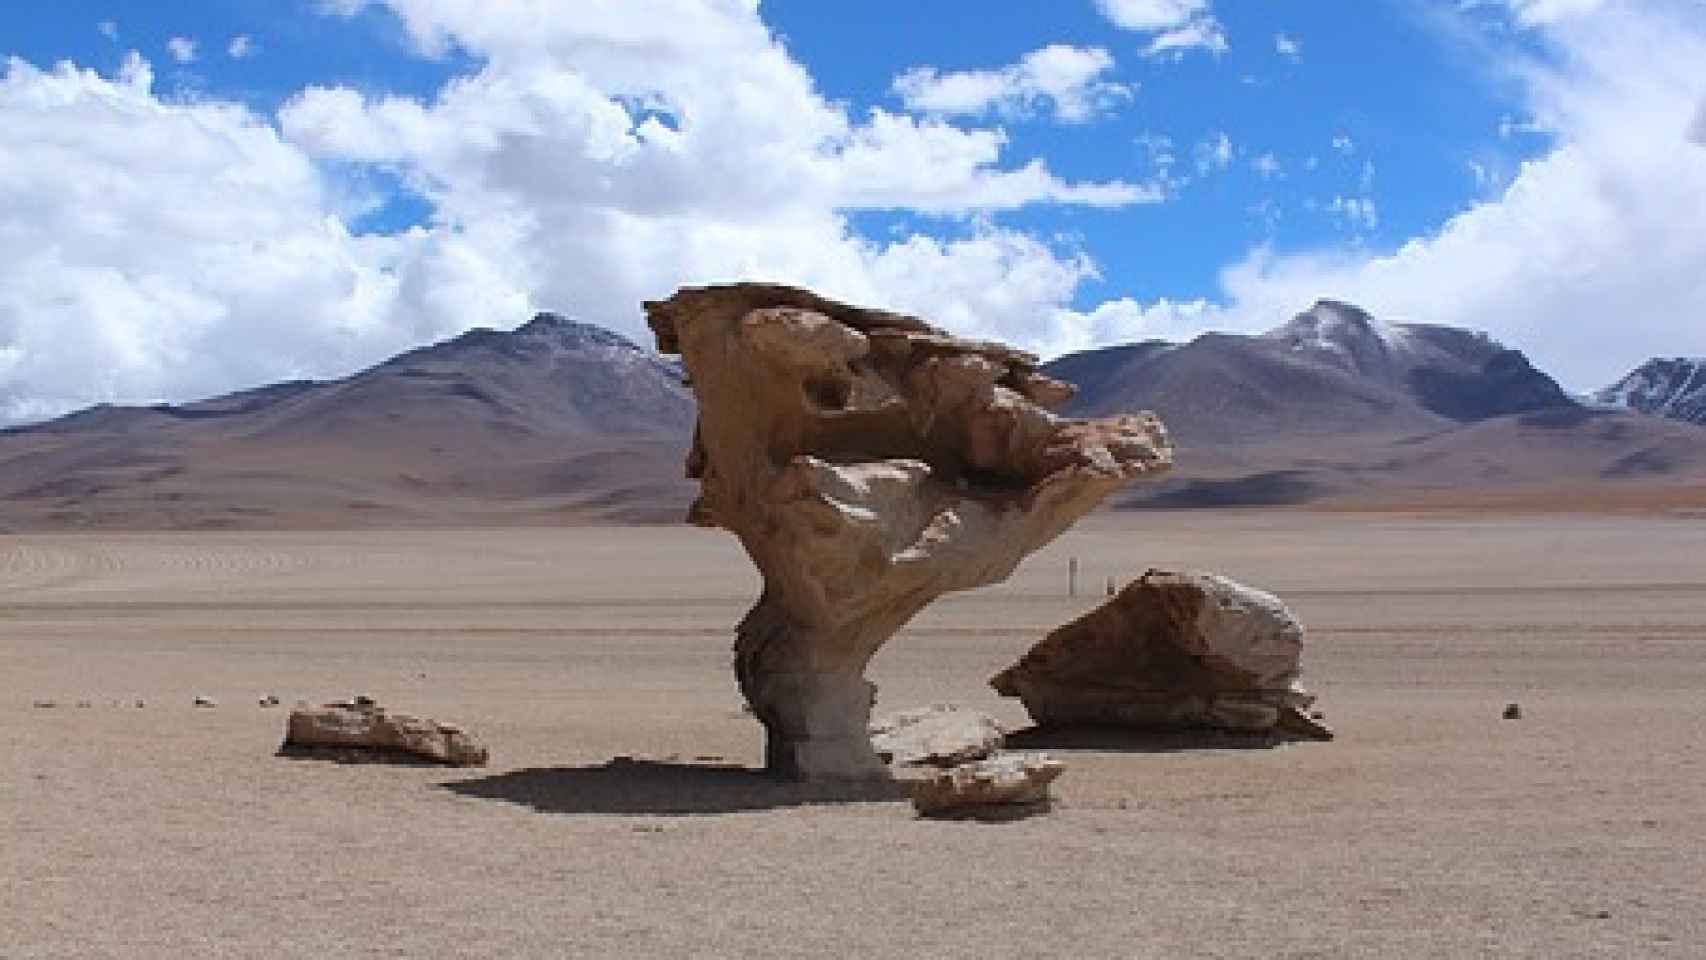 El árbol de piedra, monumento natural en Bolivia.